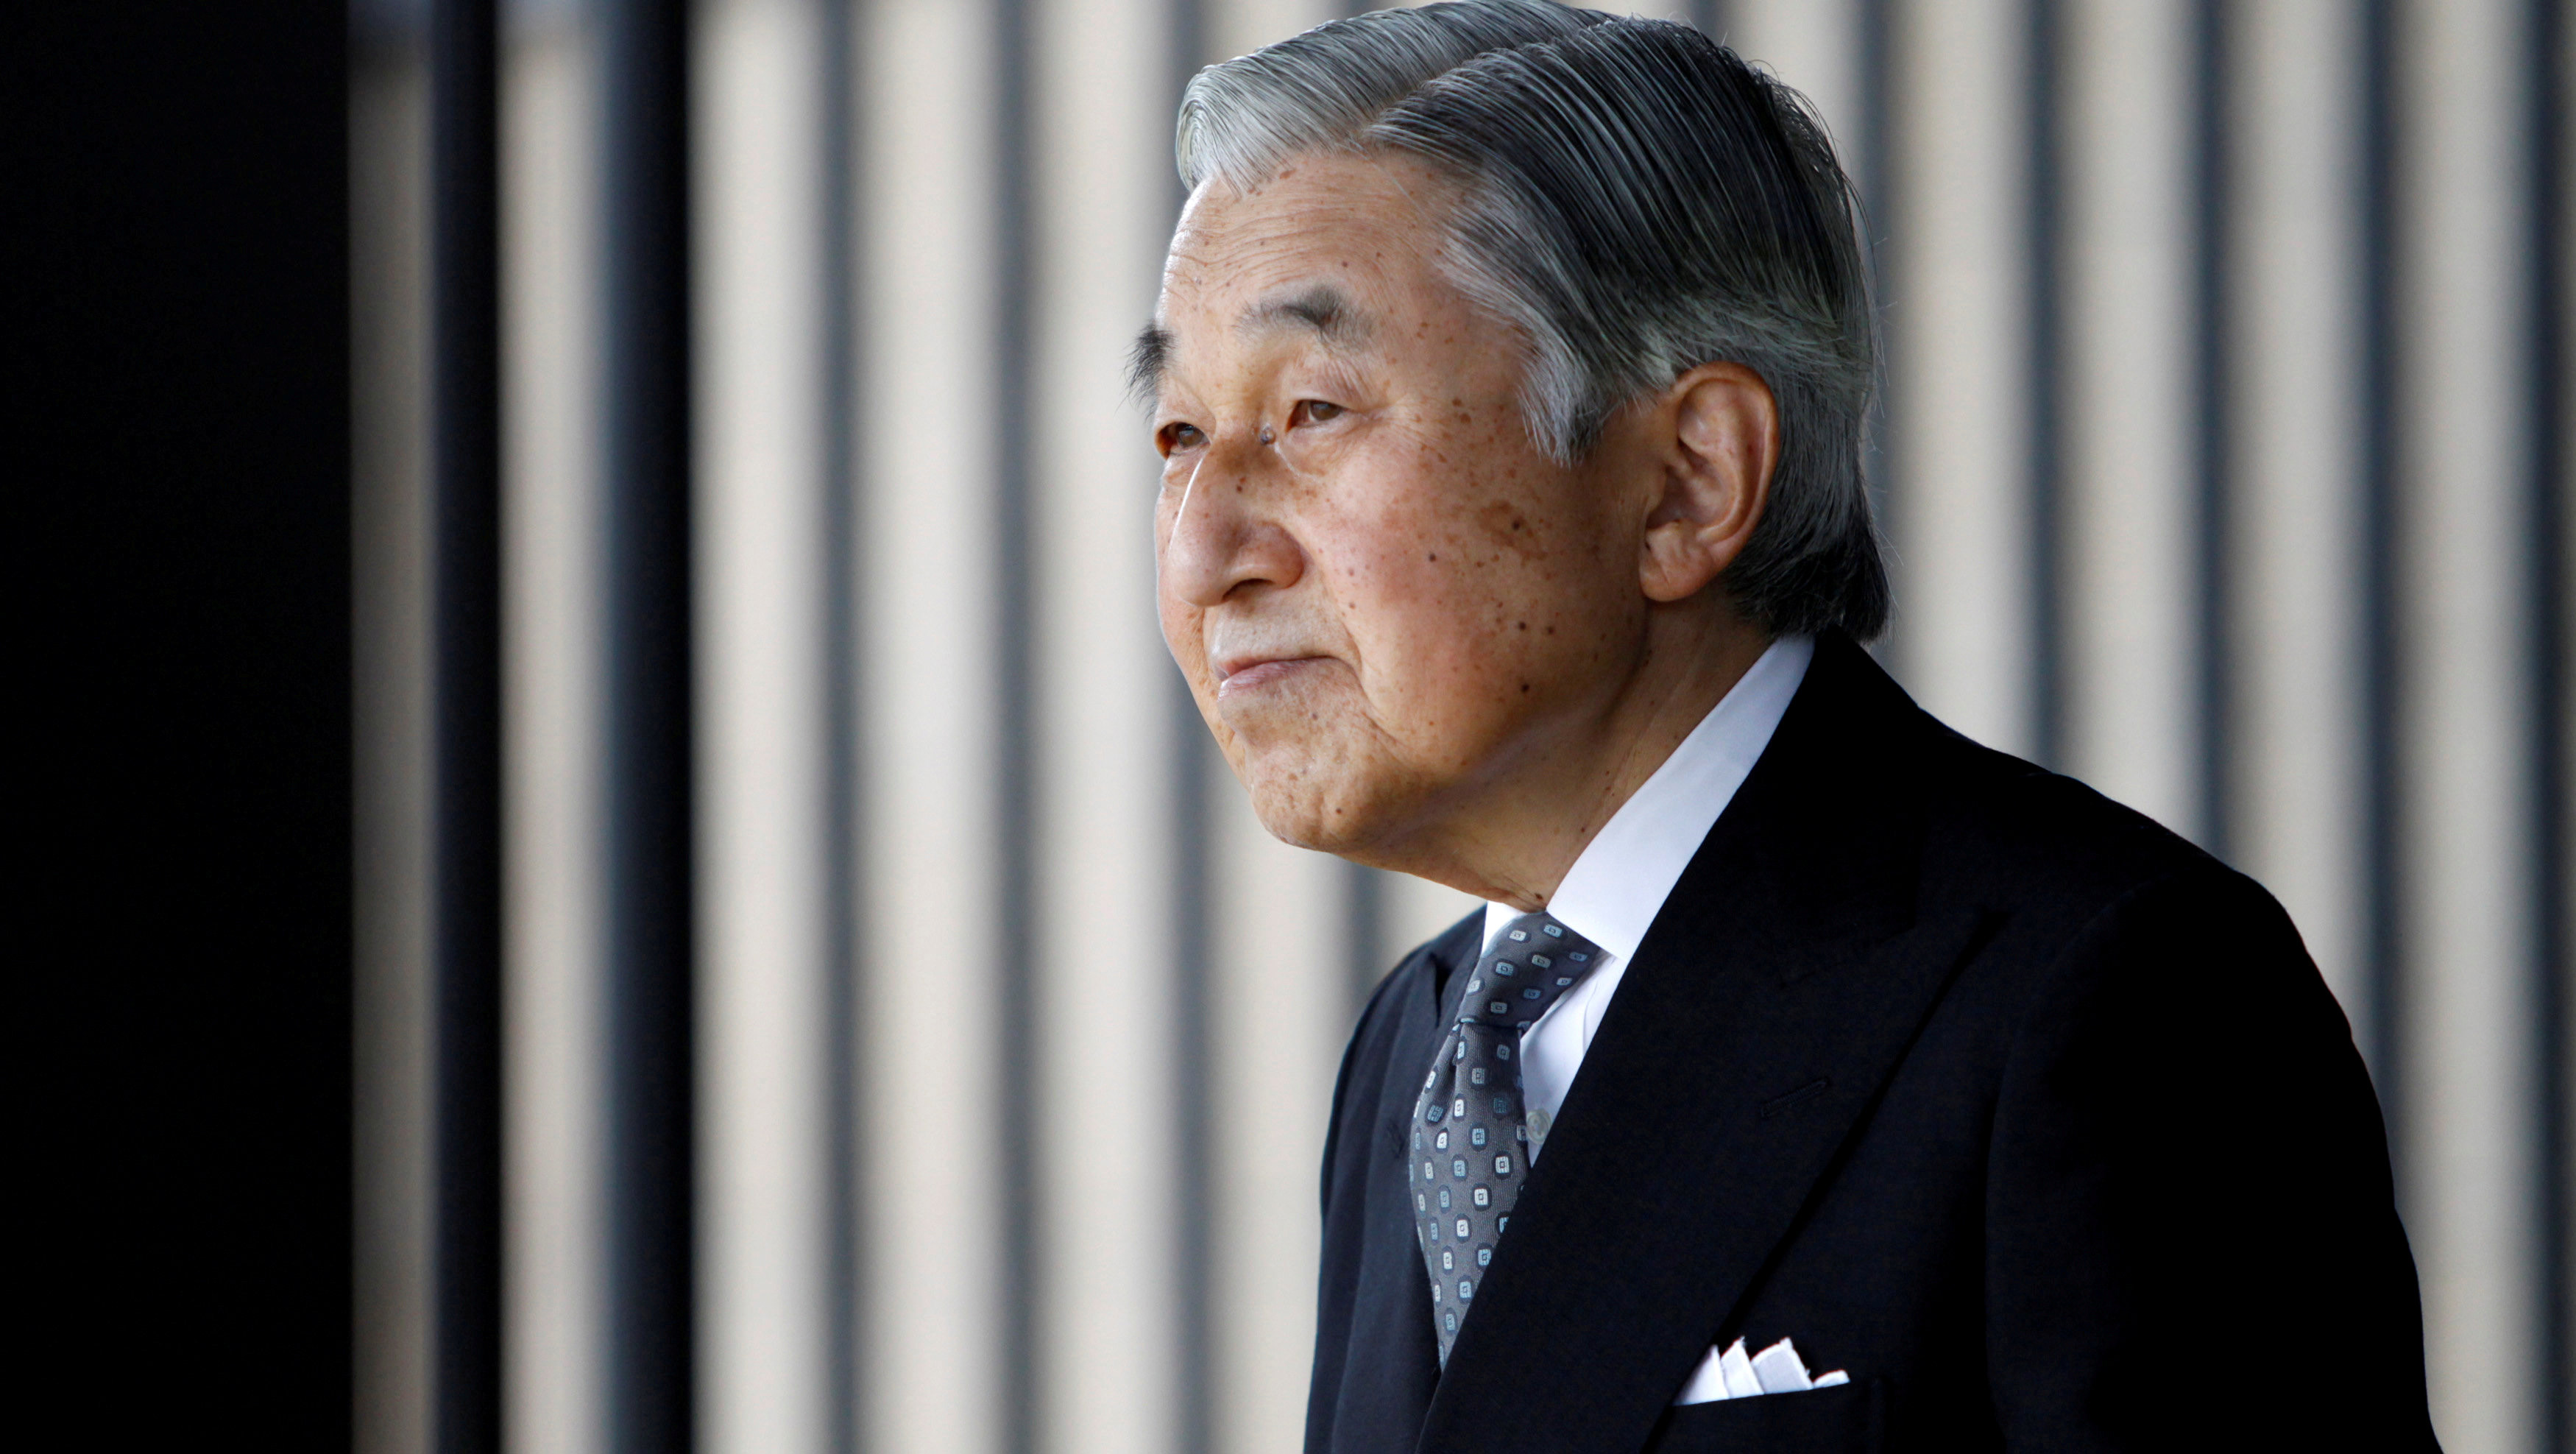 Mayor de 80 años y aquejado de salud, el emperador Akihito opta por dejar el trono.